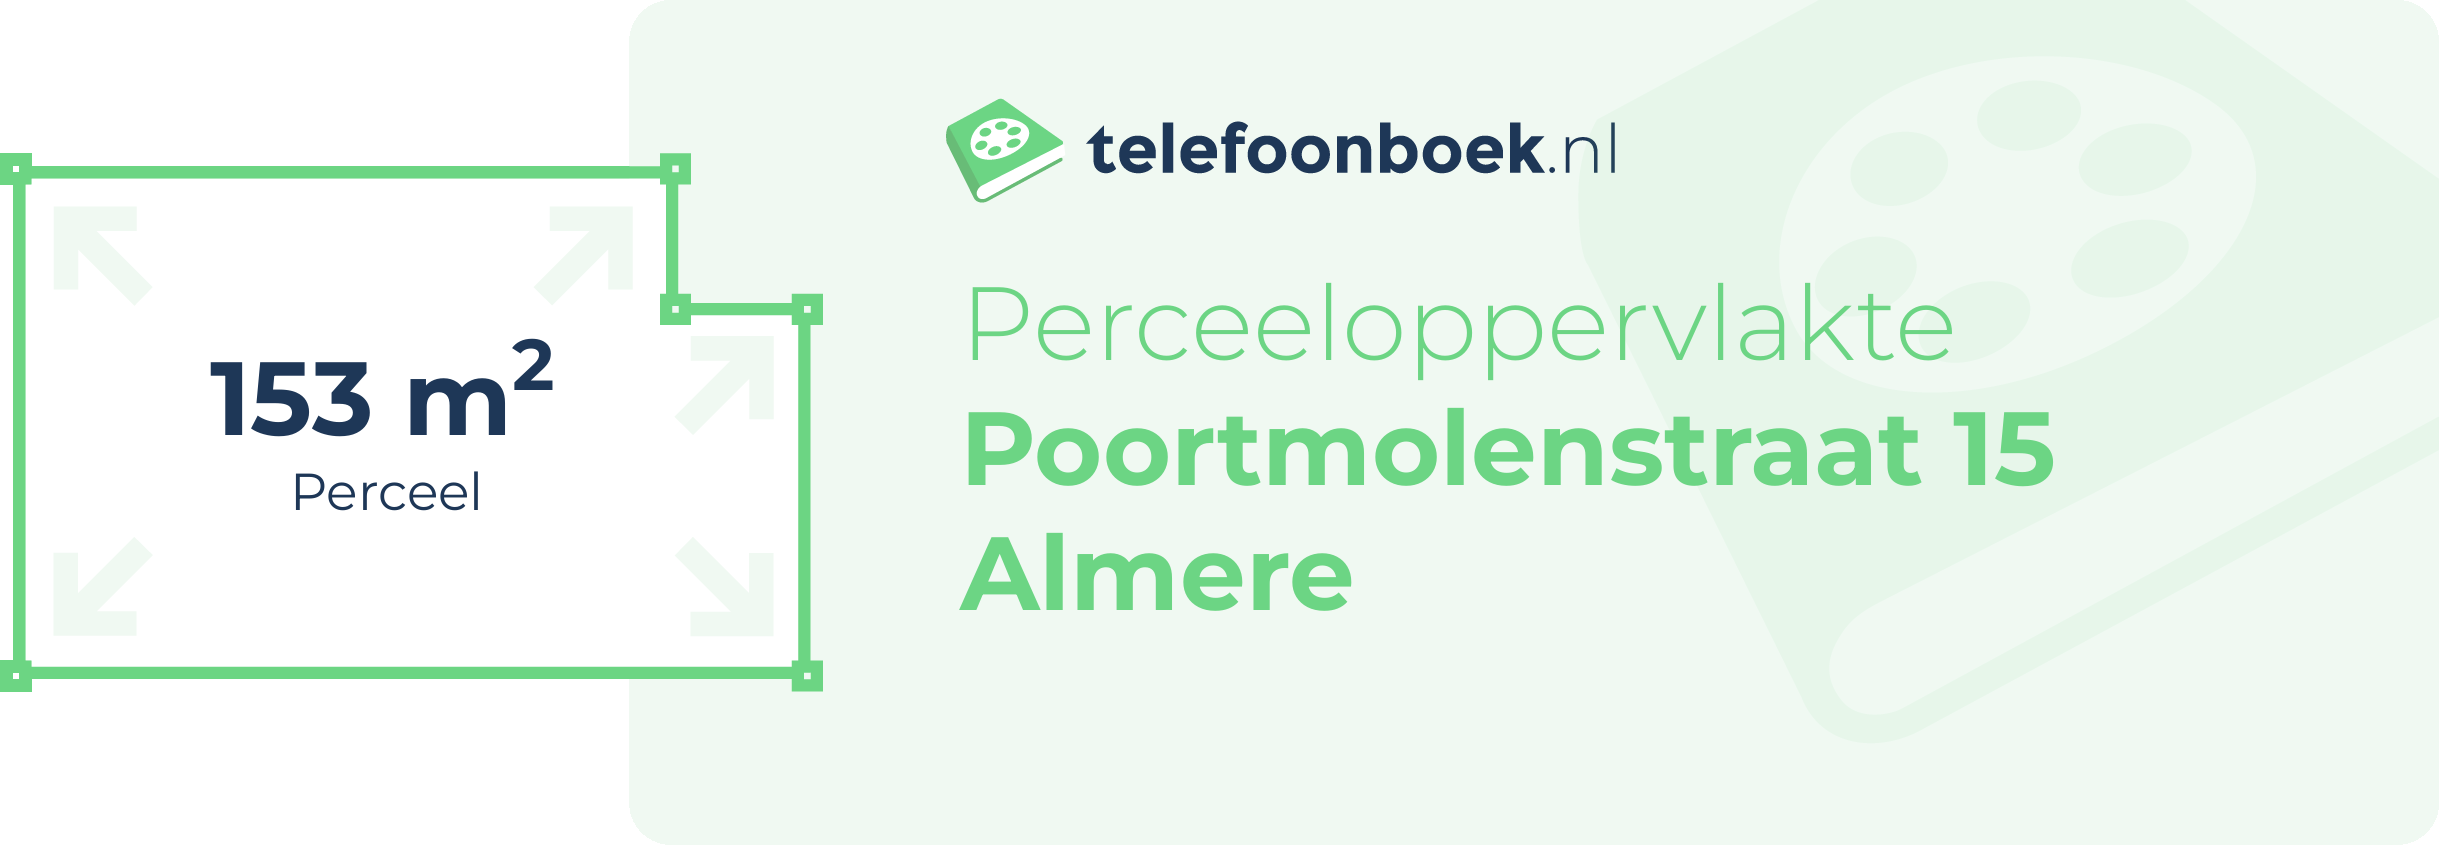 Perceeloppervlakte Poortmolenstraat 15 Almere